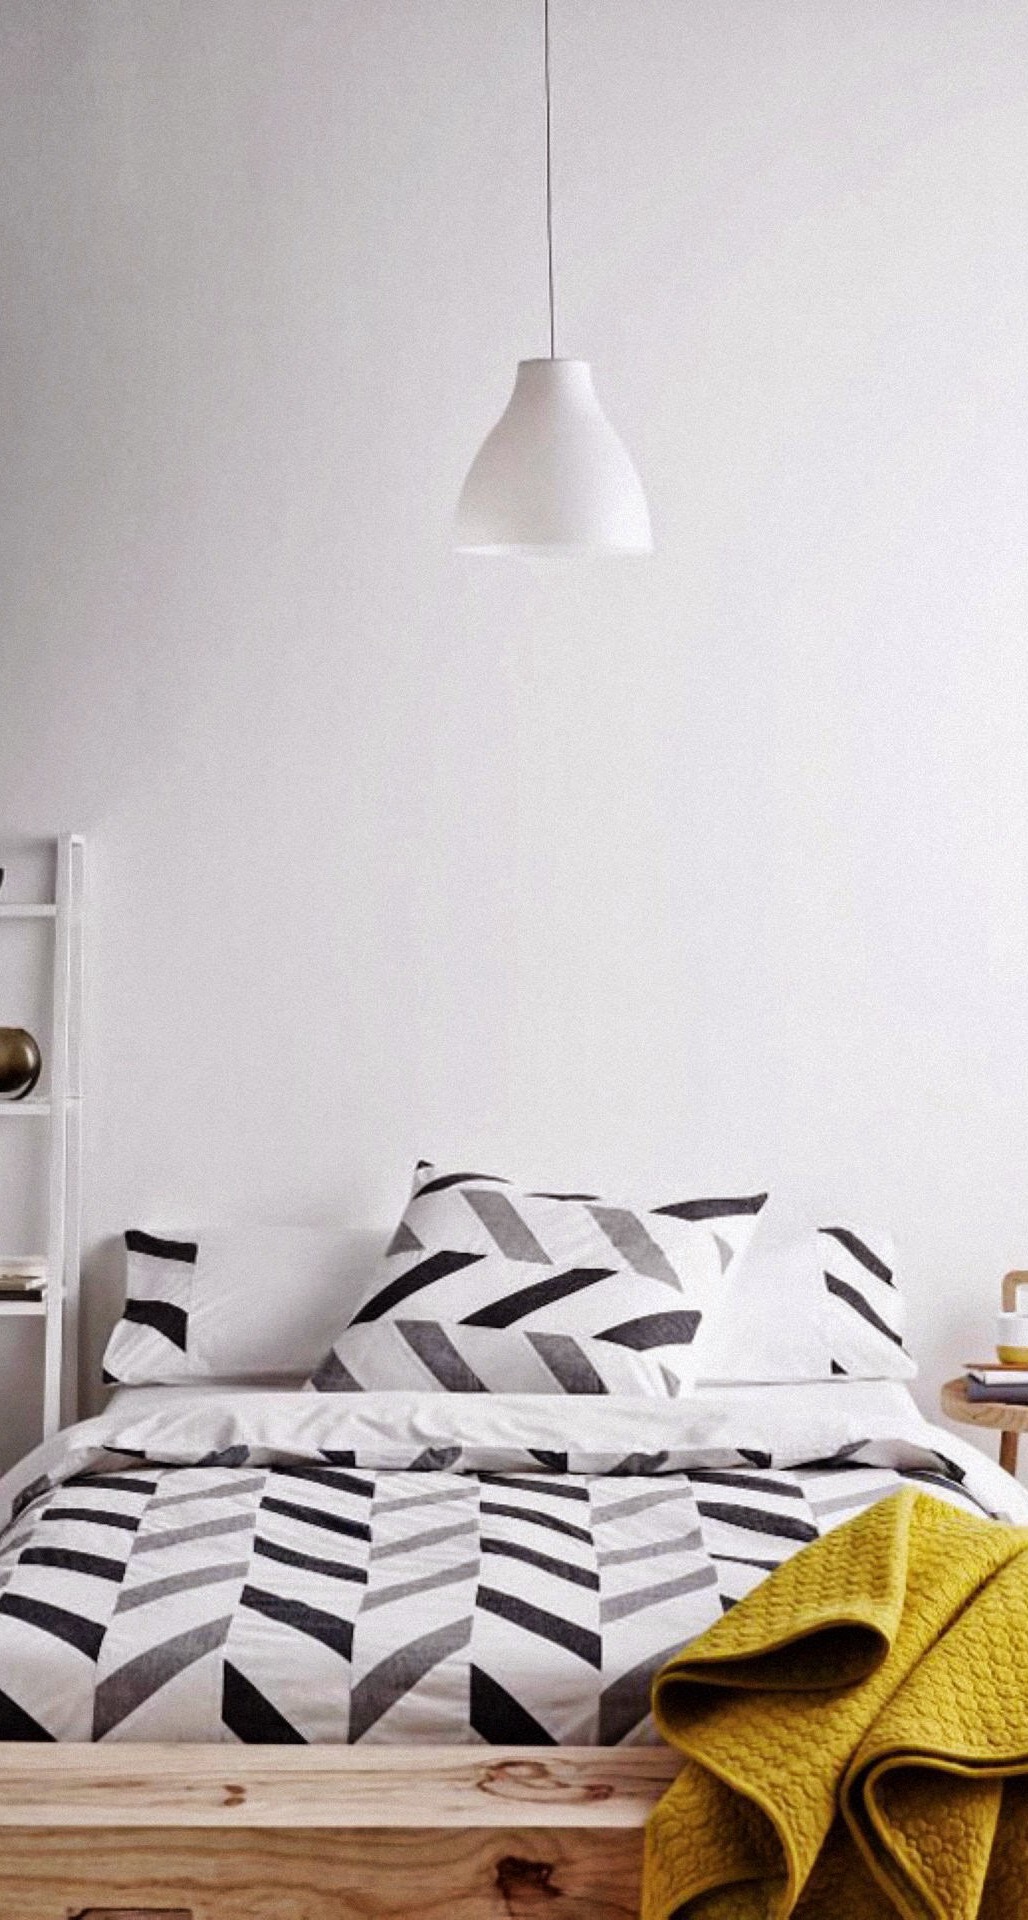 Bedroom Interior Design Idea Iphone 6 Plus Hd Wallpaper - Room Wallpaper For Iphone , HD Wallpaper & Backgrounds